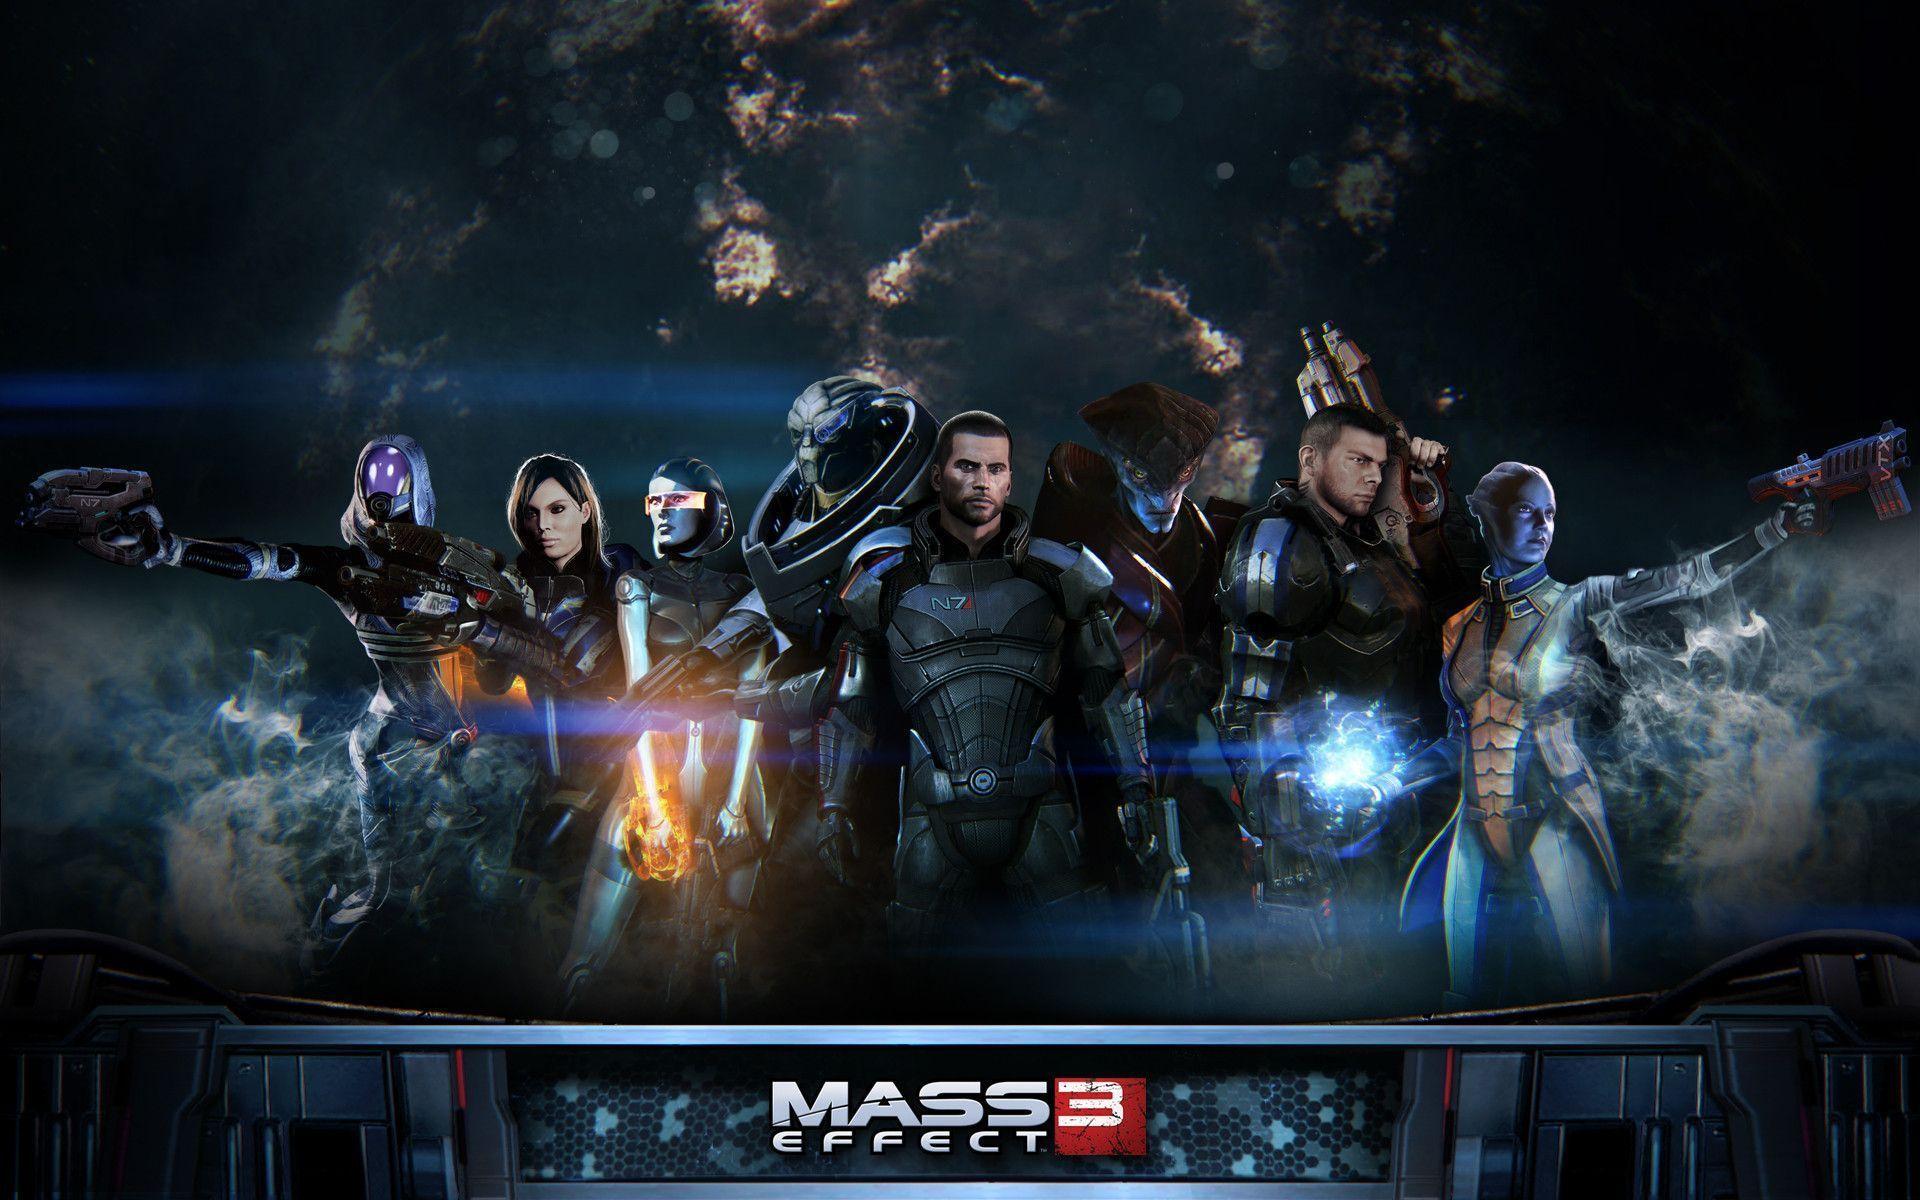 Mass Effect 3 Wallpaper Desktop Wallpaper. Wallpaper